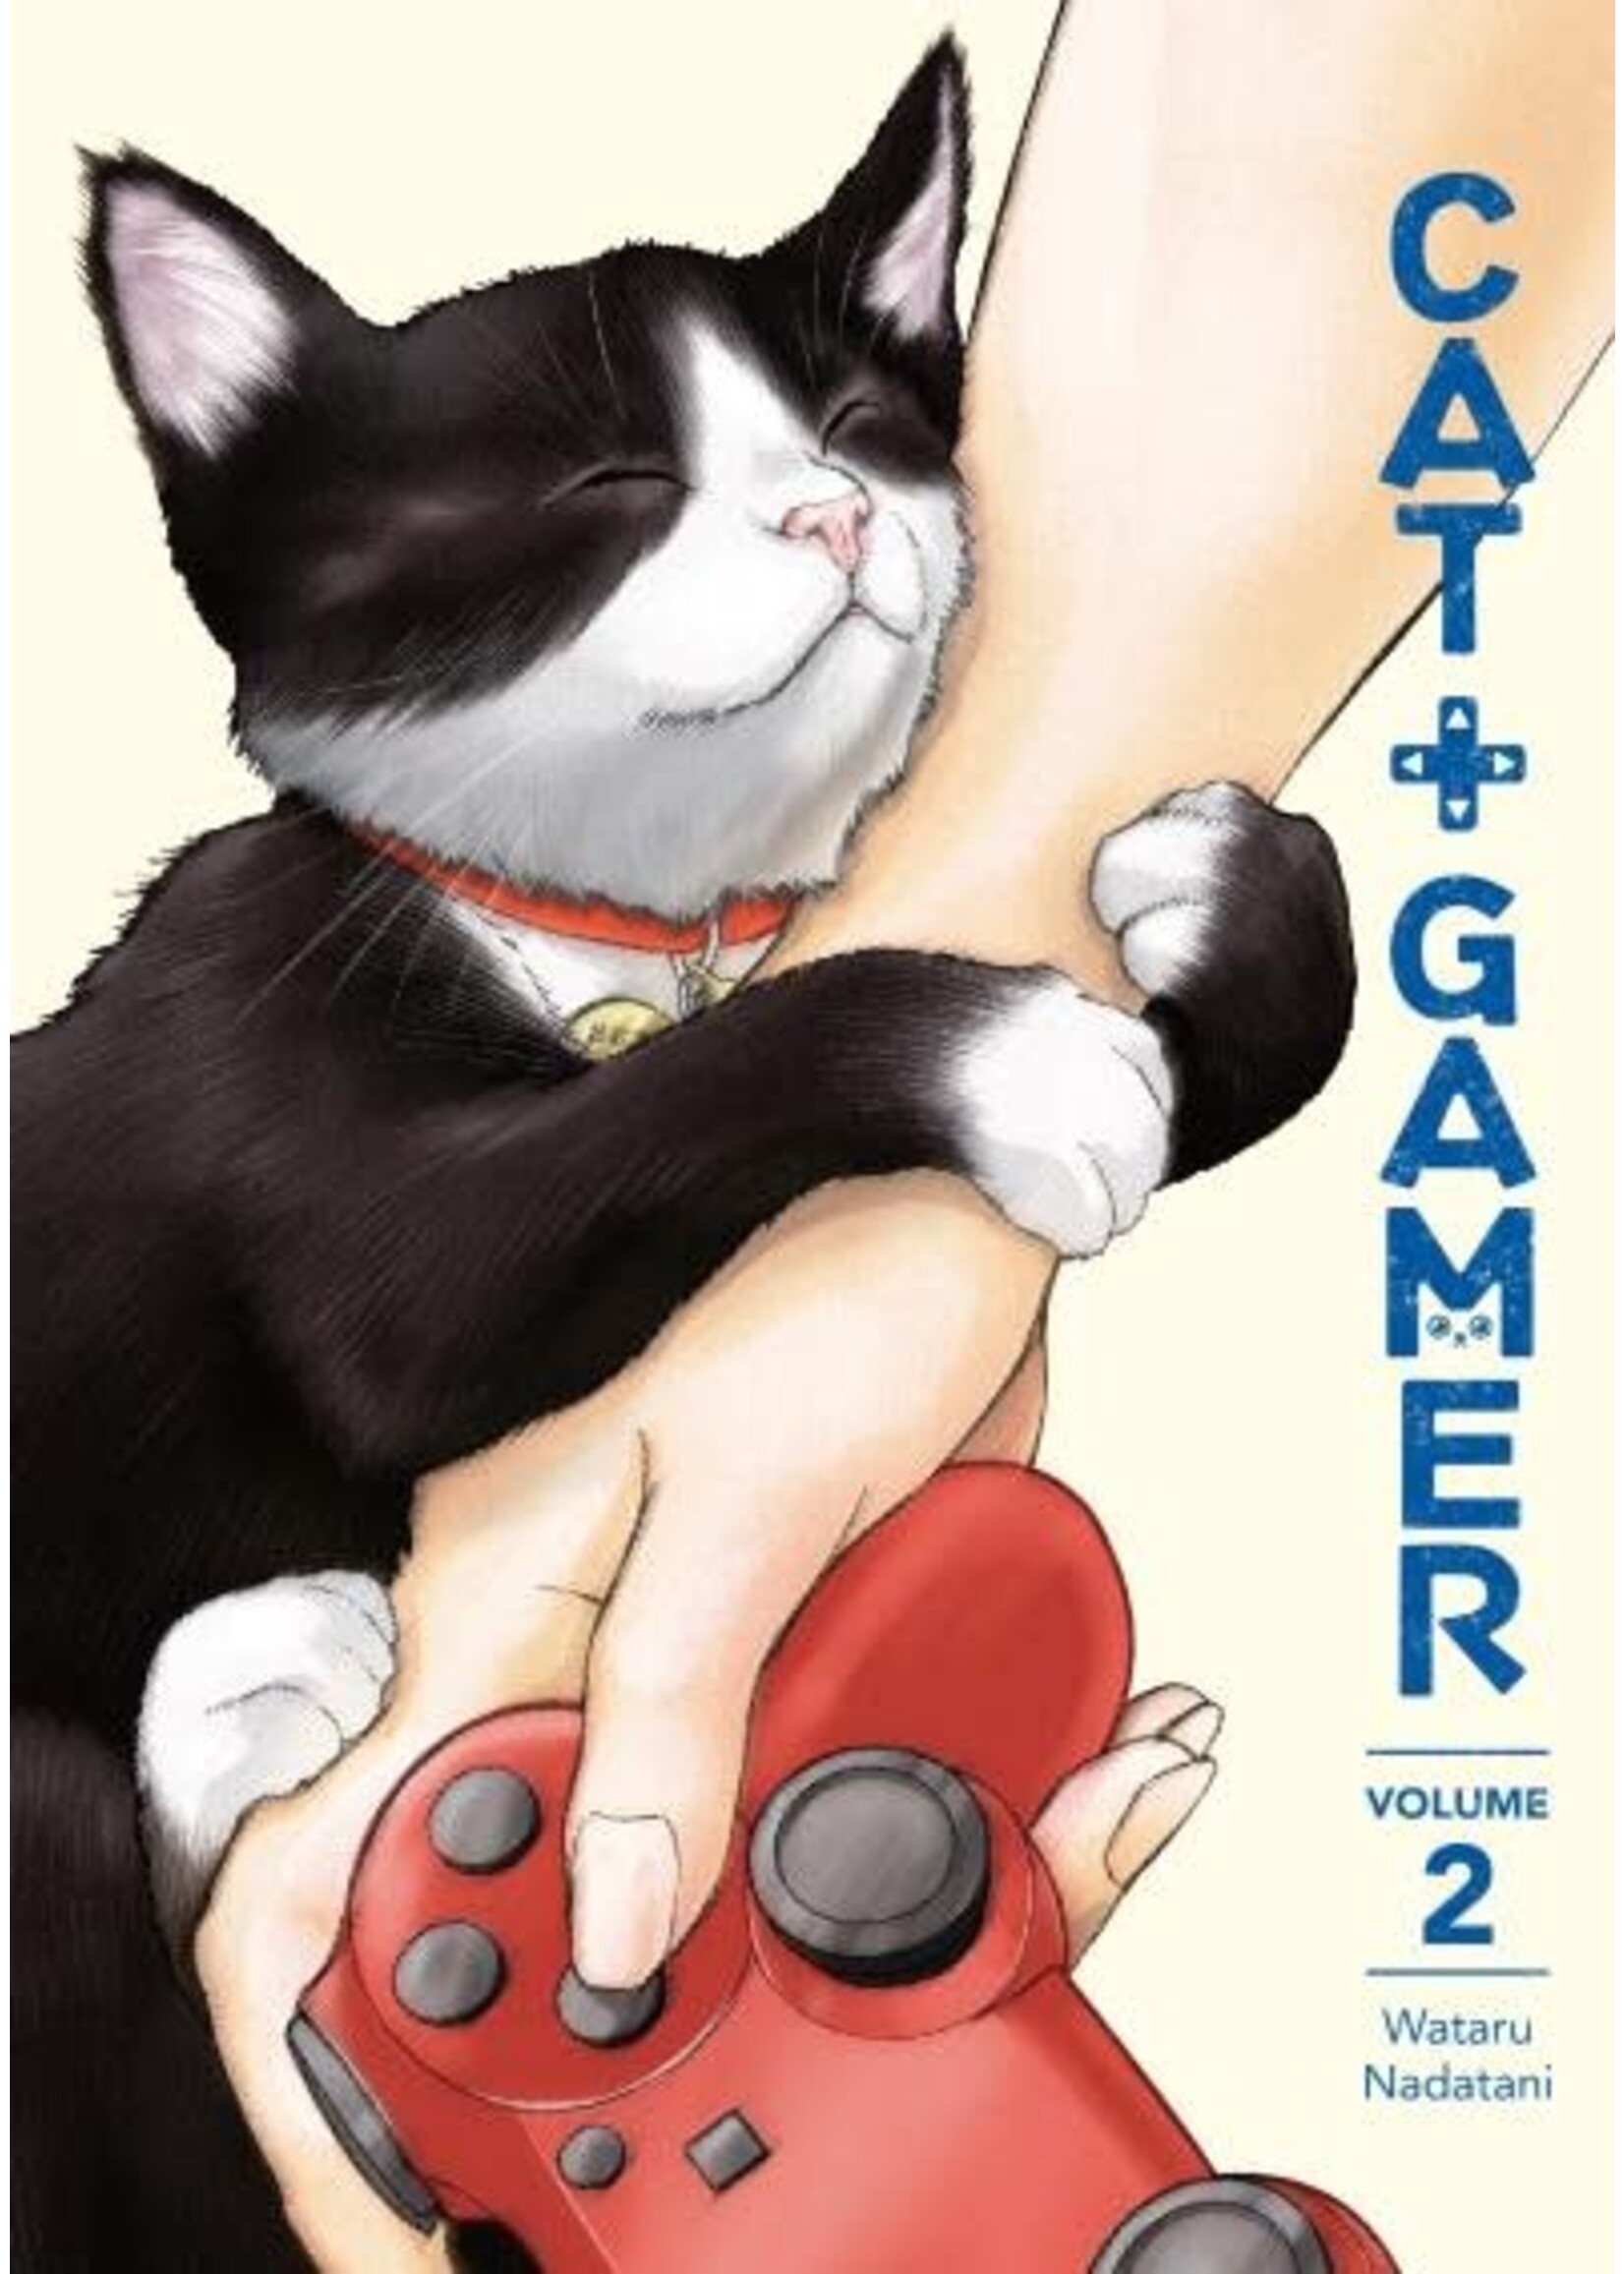 Cat + Gamer, Vol. 2, by Wataru Nadatani